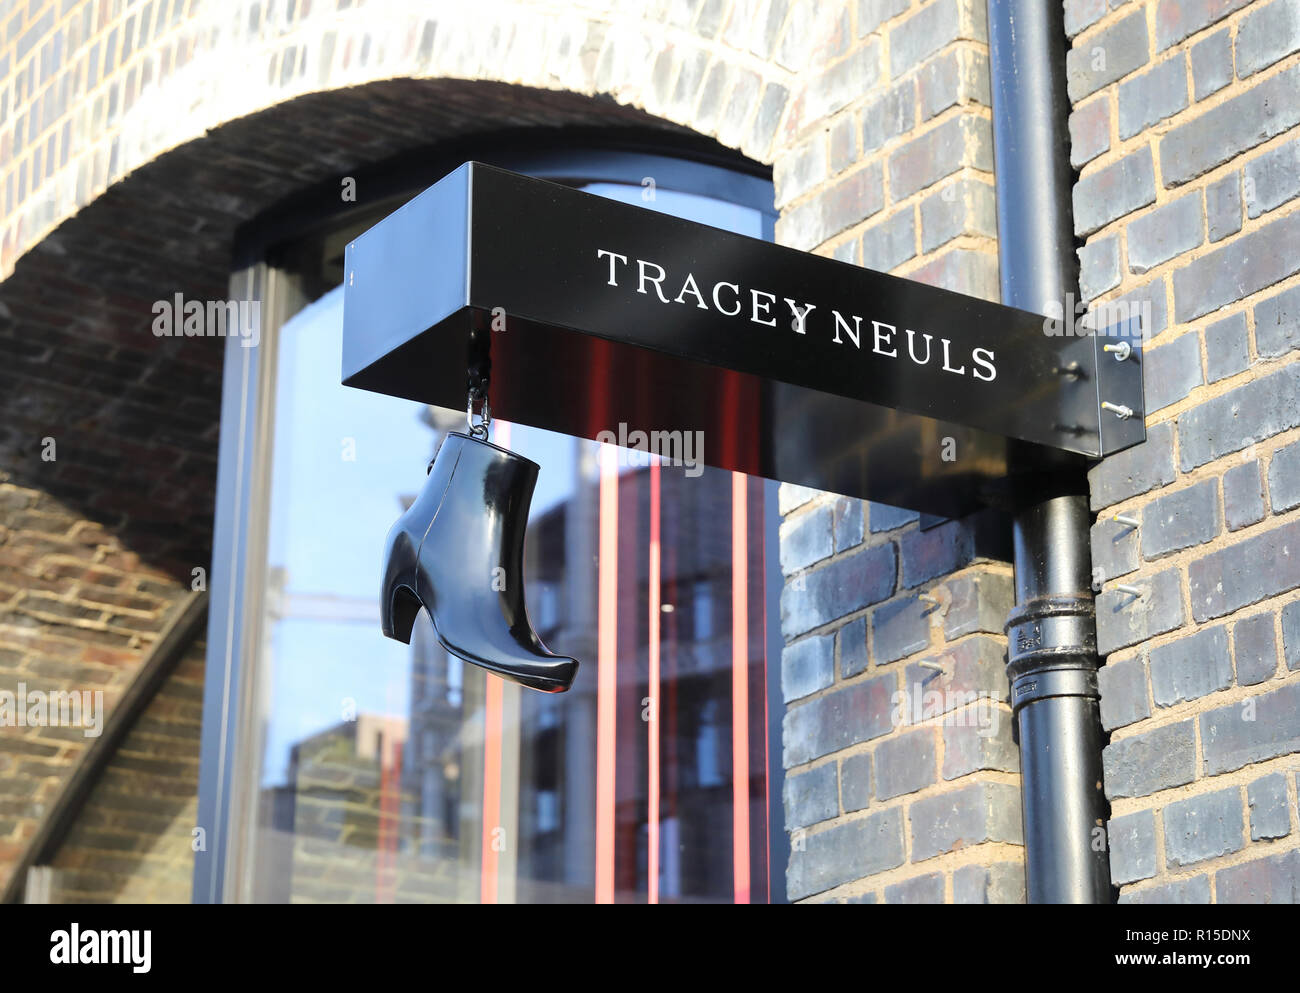 Tracey Neuls Luxushotels Shoe Shop an Kohle Tropfen Yard, die neue Luxushotels in Einzelhandel und Gastronomie Ziel an der Kings Cross, nördlich von London, Großbritannien Stockfoto